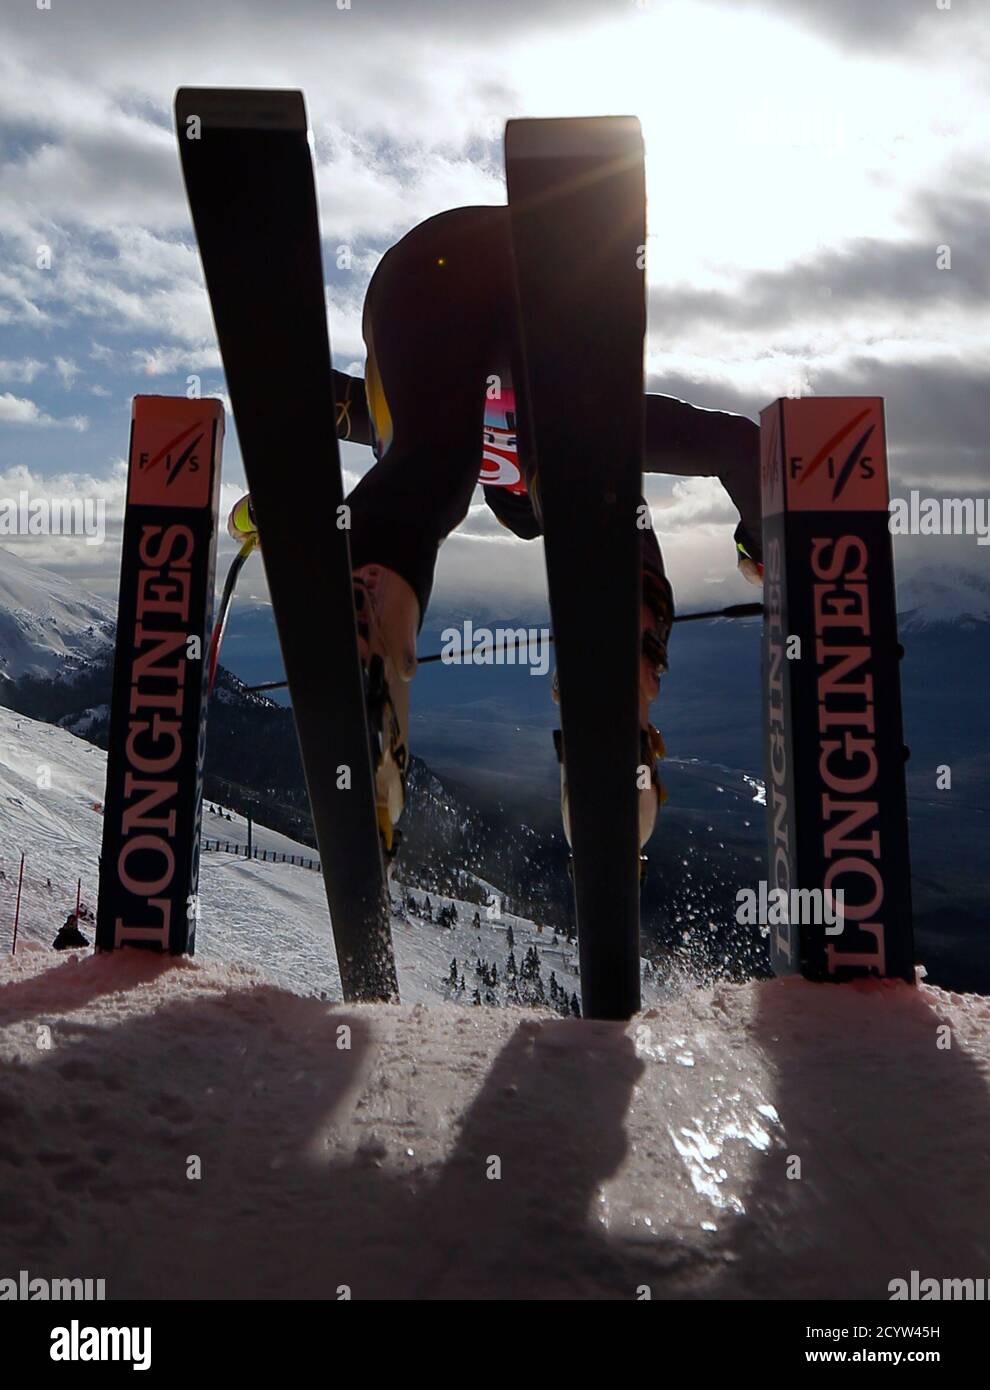 Lindsey Vonn, des États-Unis, quitte le départ lors de l'entraînement de ski alpin pour la coupe du monde des femmes à Lake Louise, en Alberta, le 28 novembre 2012. REUTERS/Mike Blake (CANADA - Tags: SKI DE SPORT) Banque D'Images